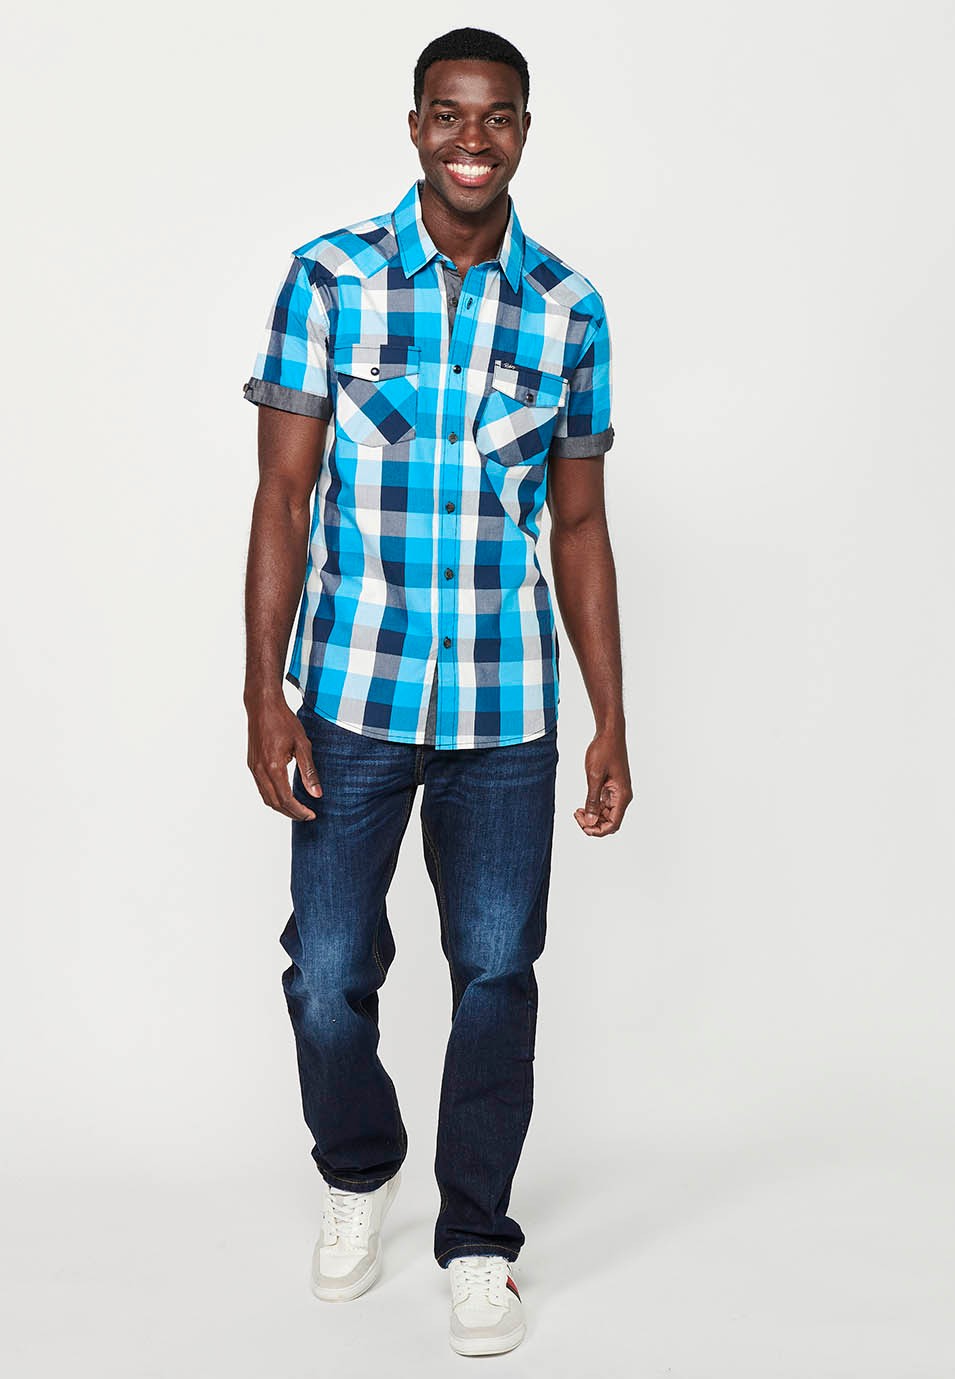 Camisa manga corta de algodón de cuadros, color azul y blanco para hombres 5